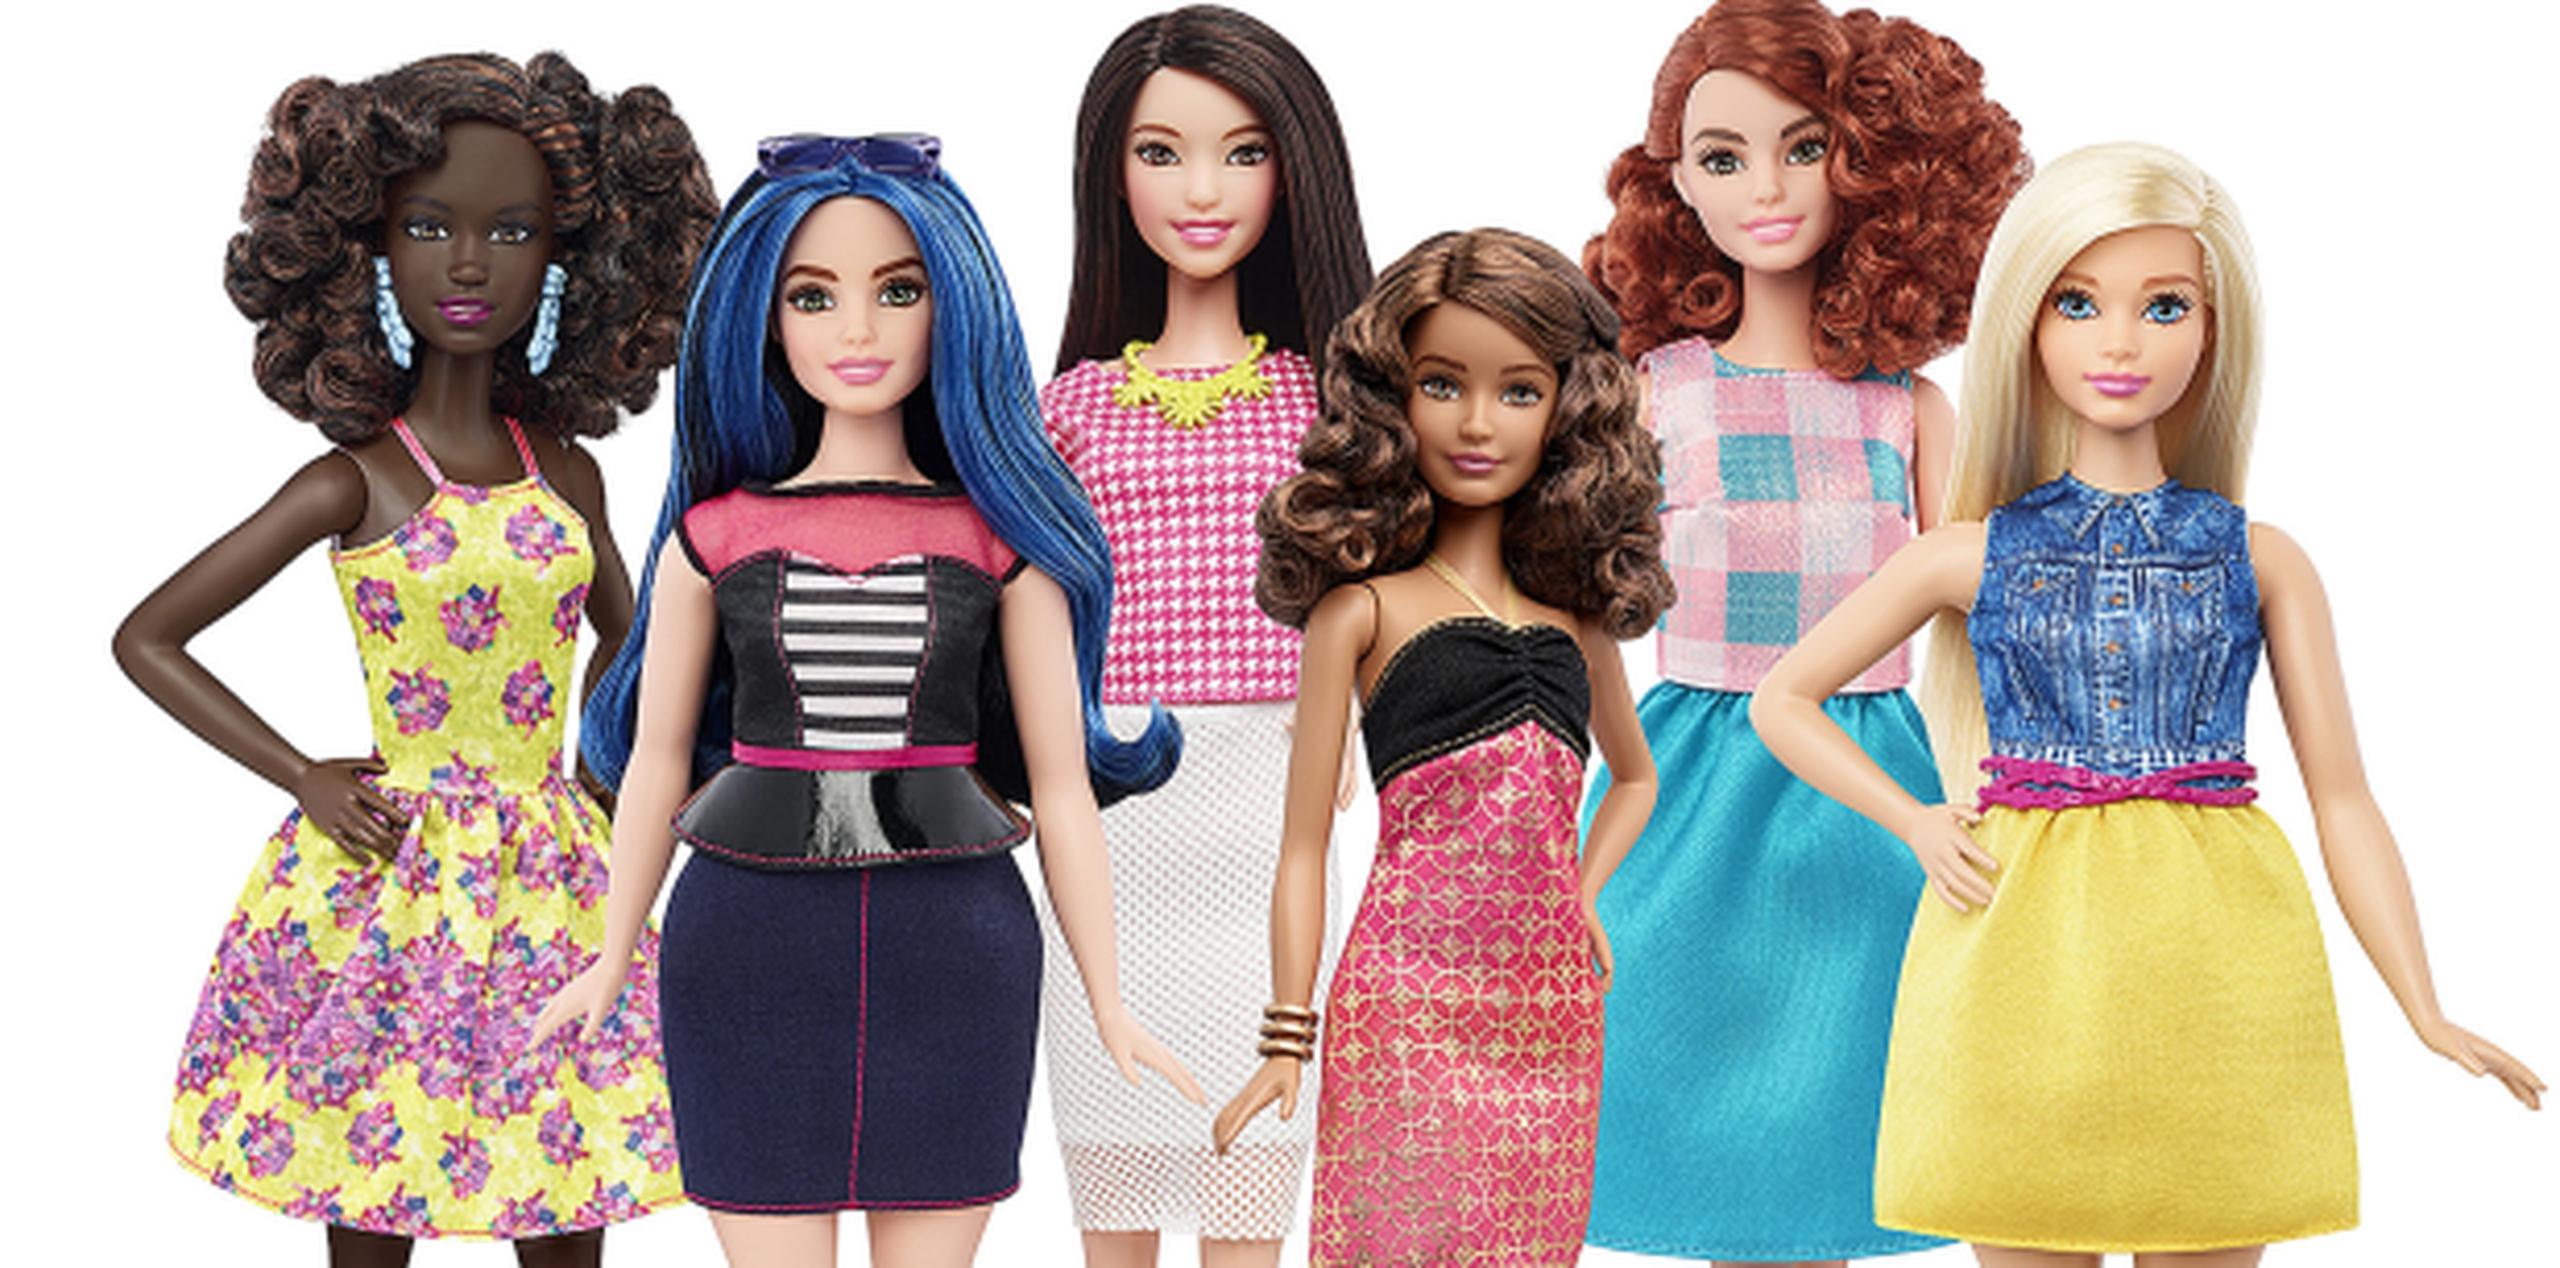 Según el fabricante de Barbie, las nuevas muñecas reflejo el mundo que las niñas ven a su alrededor y permite a las niñas elegir la muñeca con la que más se identifican. (EFE/Mattel)